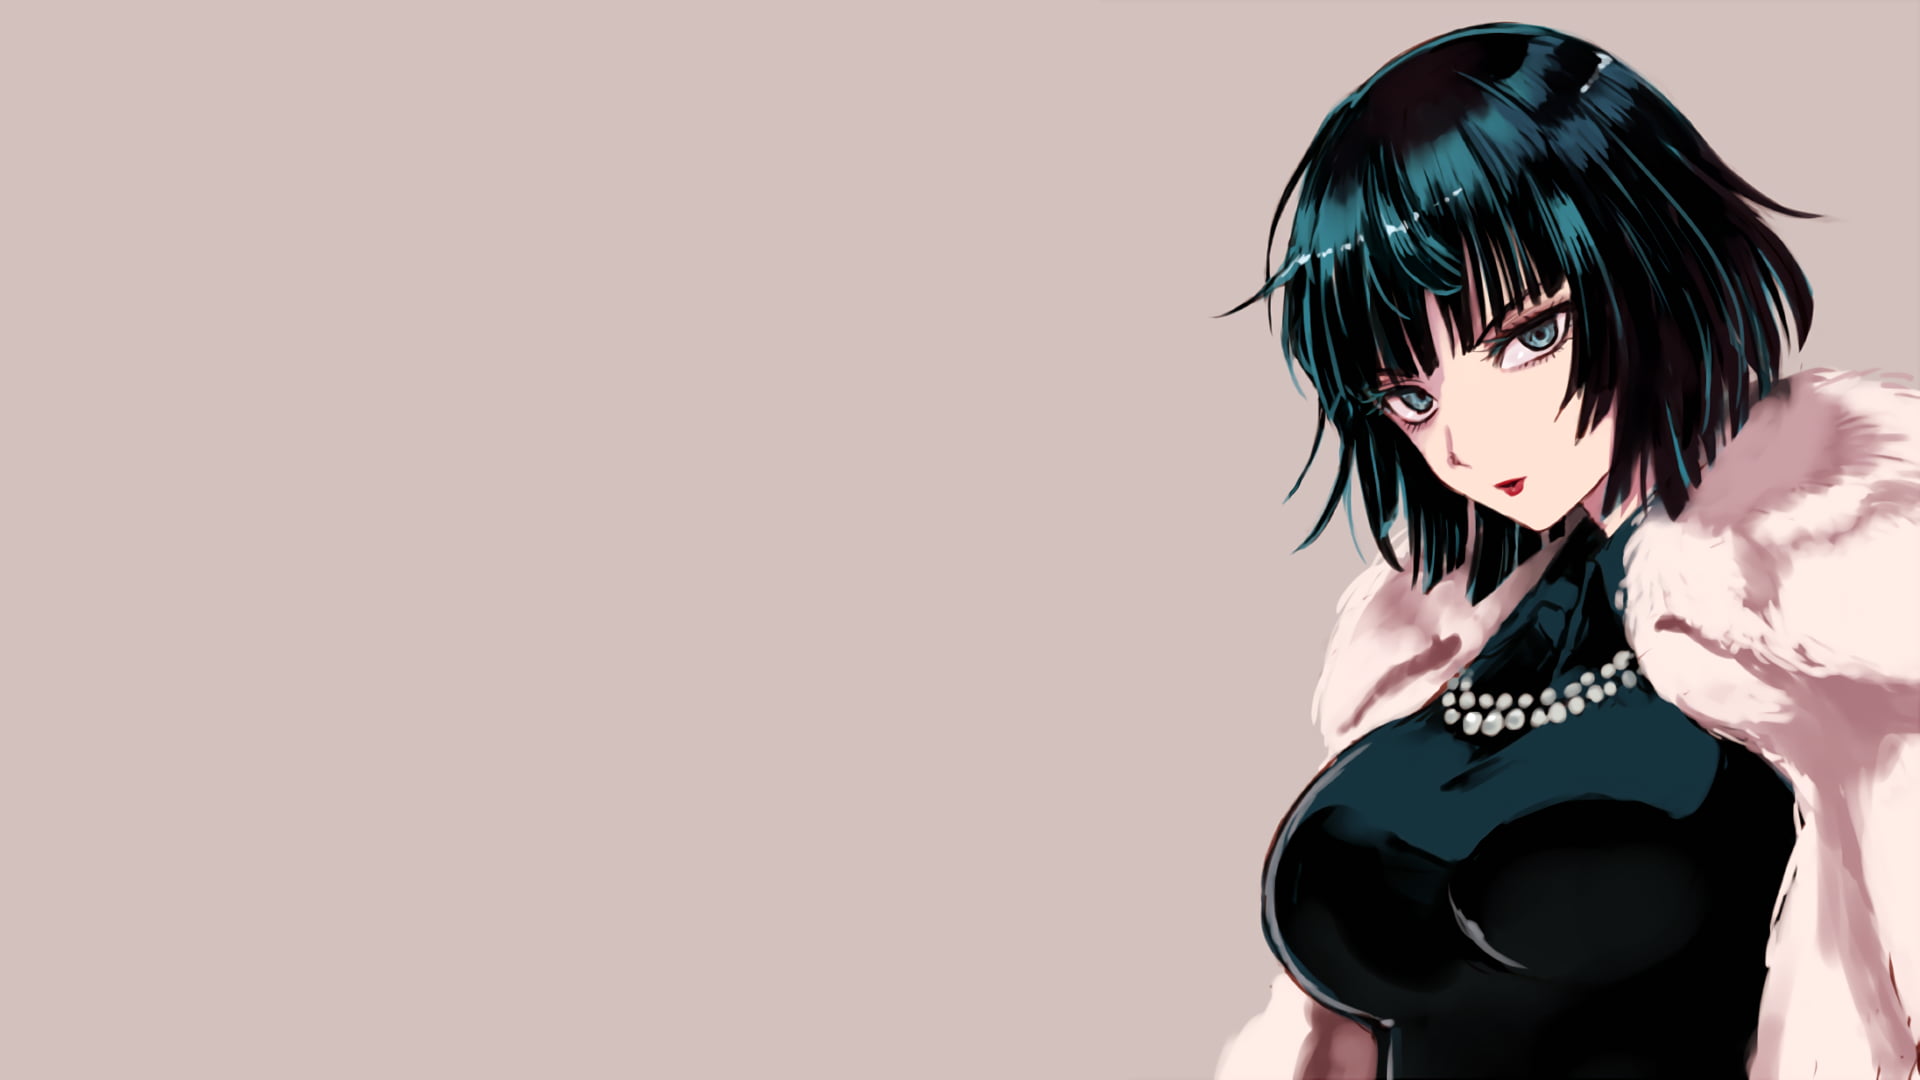 black-haired female anime character, anime girls, Fubuki, One-Punch Man